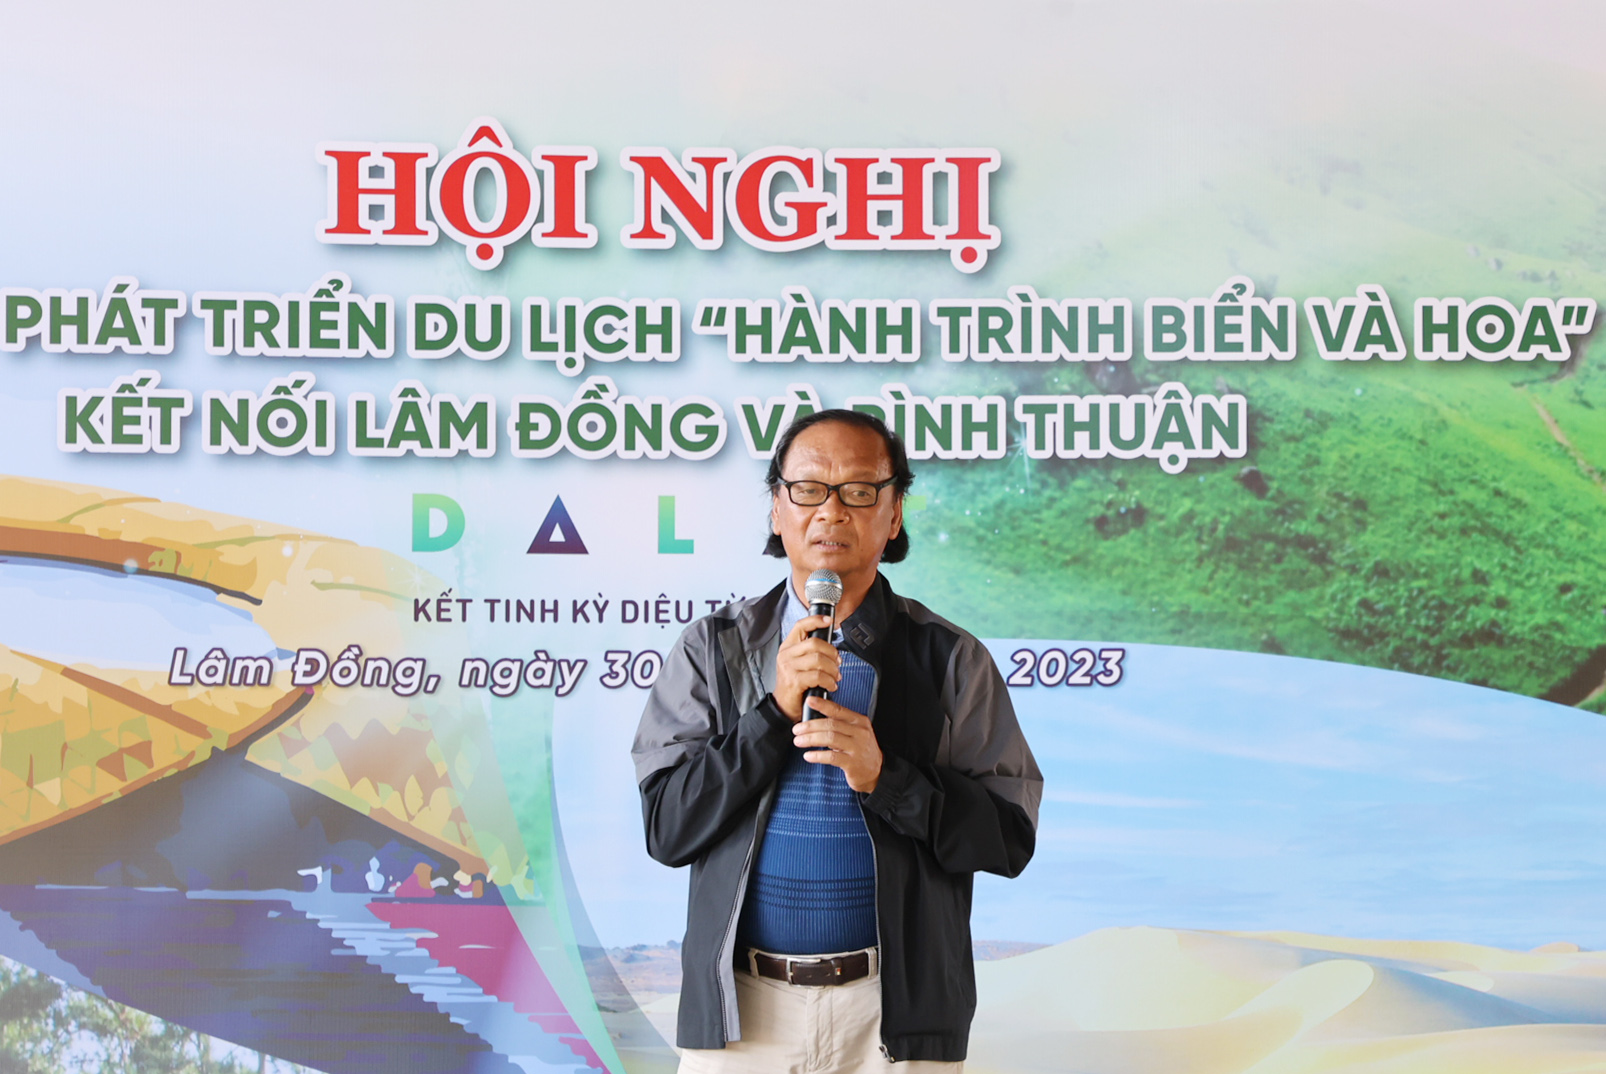 Ông Nguyễn Văn Khoa - Chủ tịch Hiệp hội Du lịch tỉnh Bình Thuận phát biểu tại Hội nghị